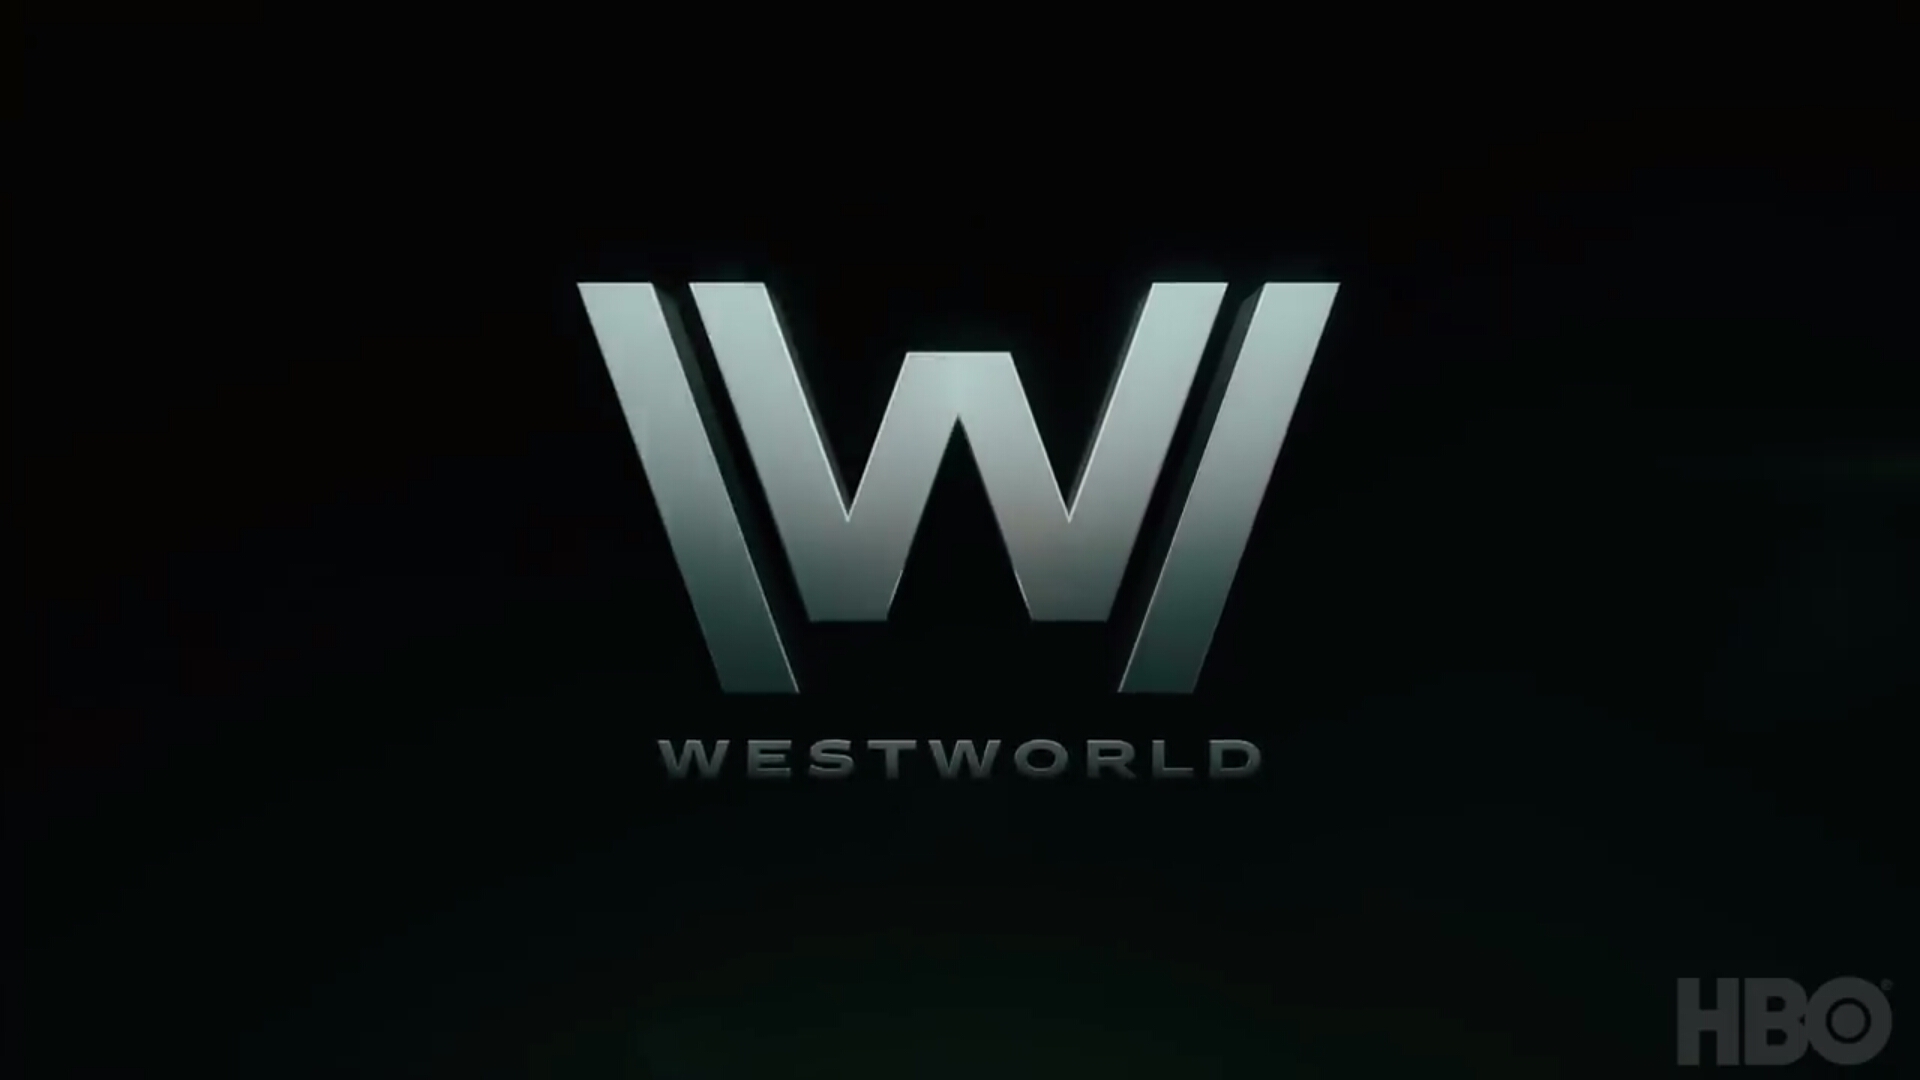 Westworld Season 3 trailer breakdown